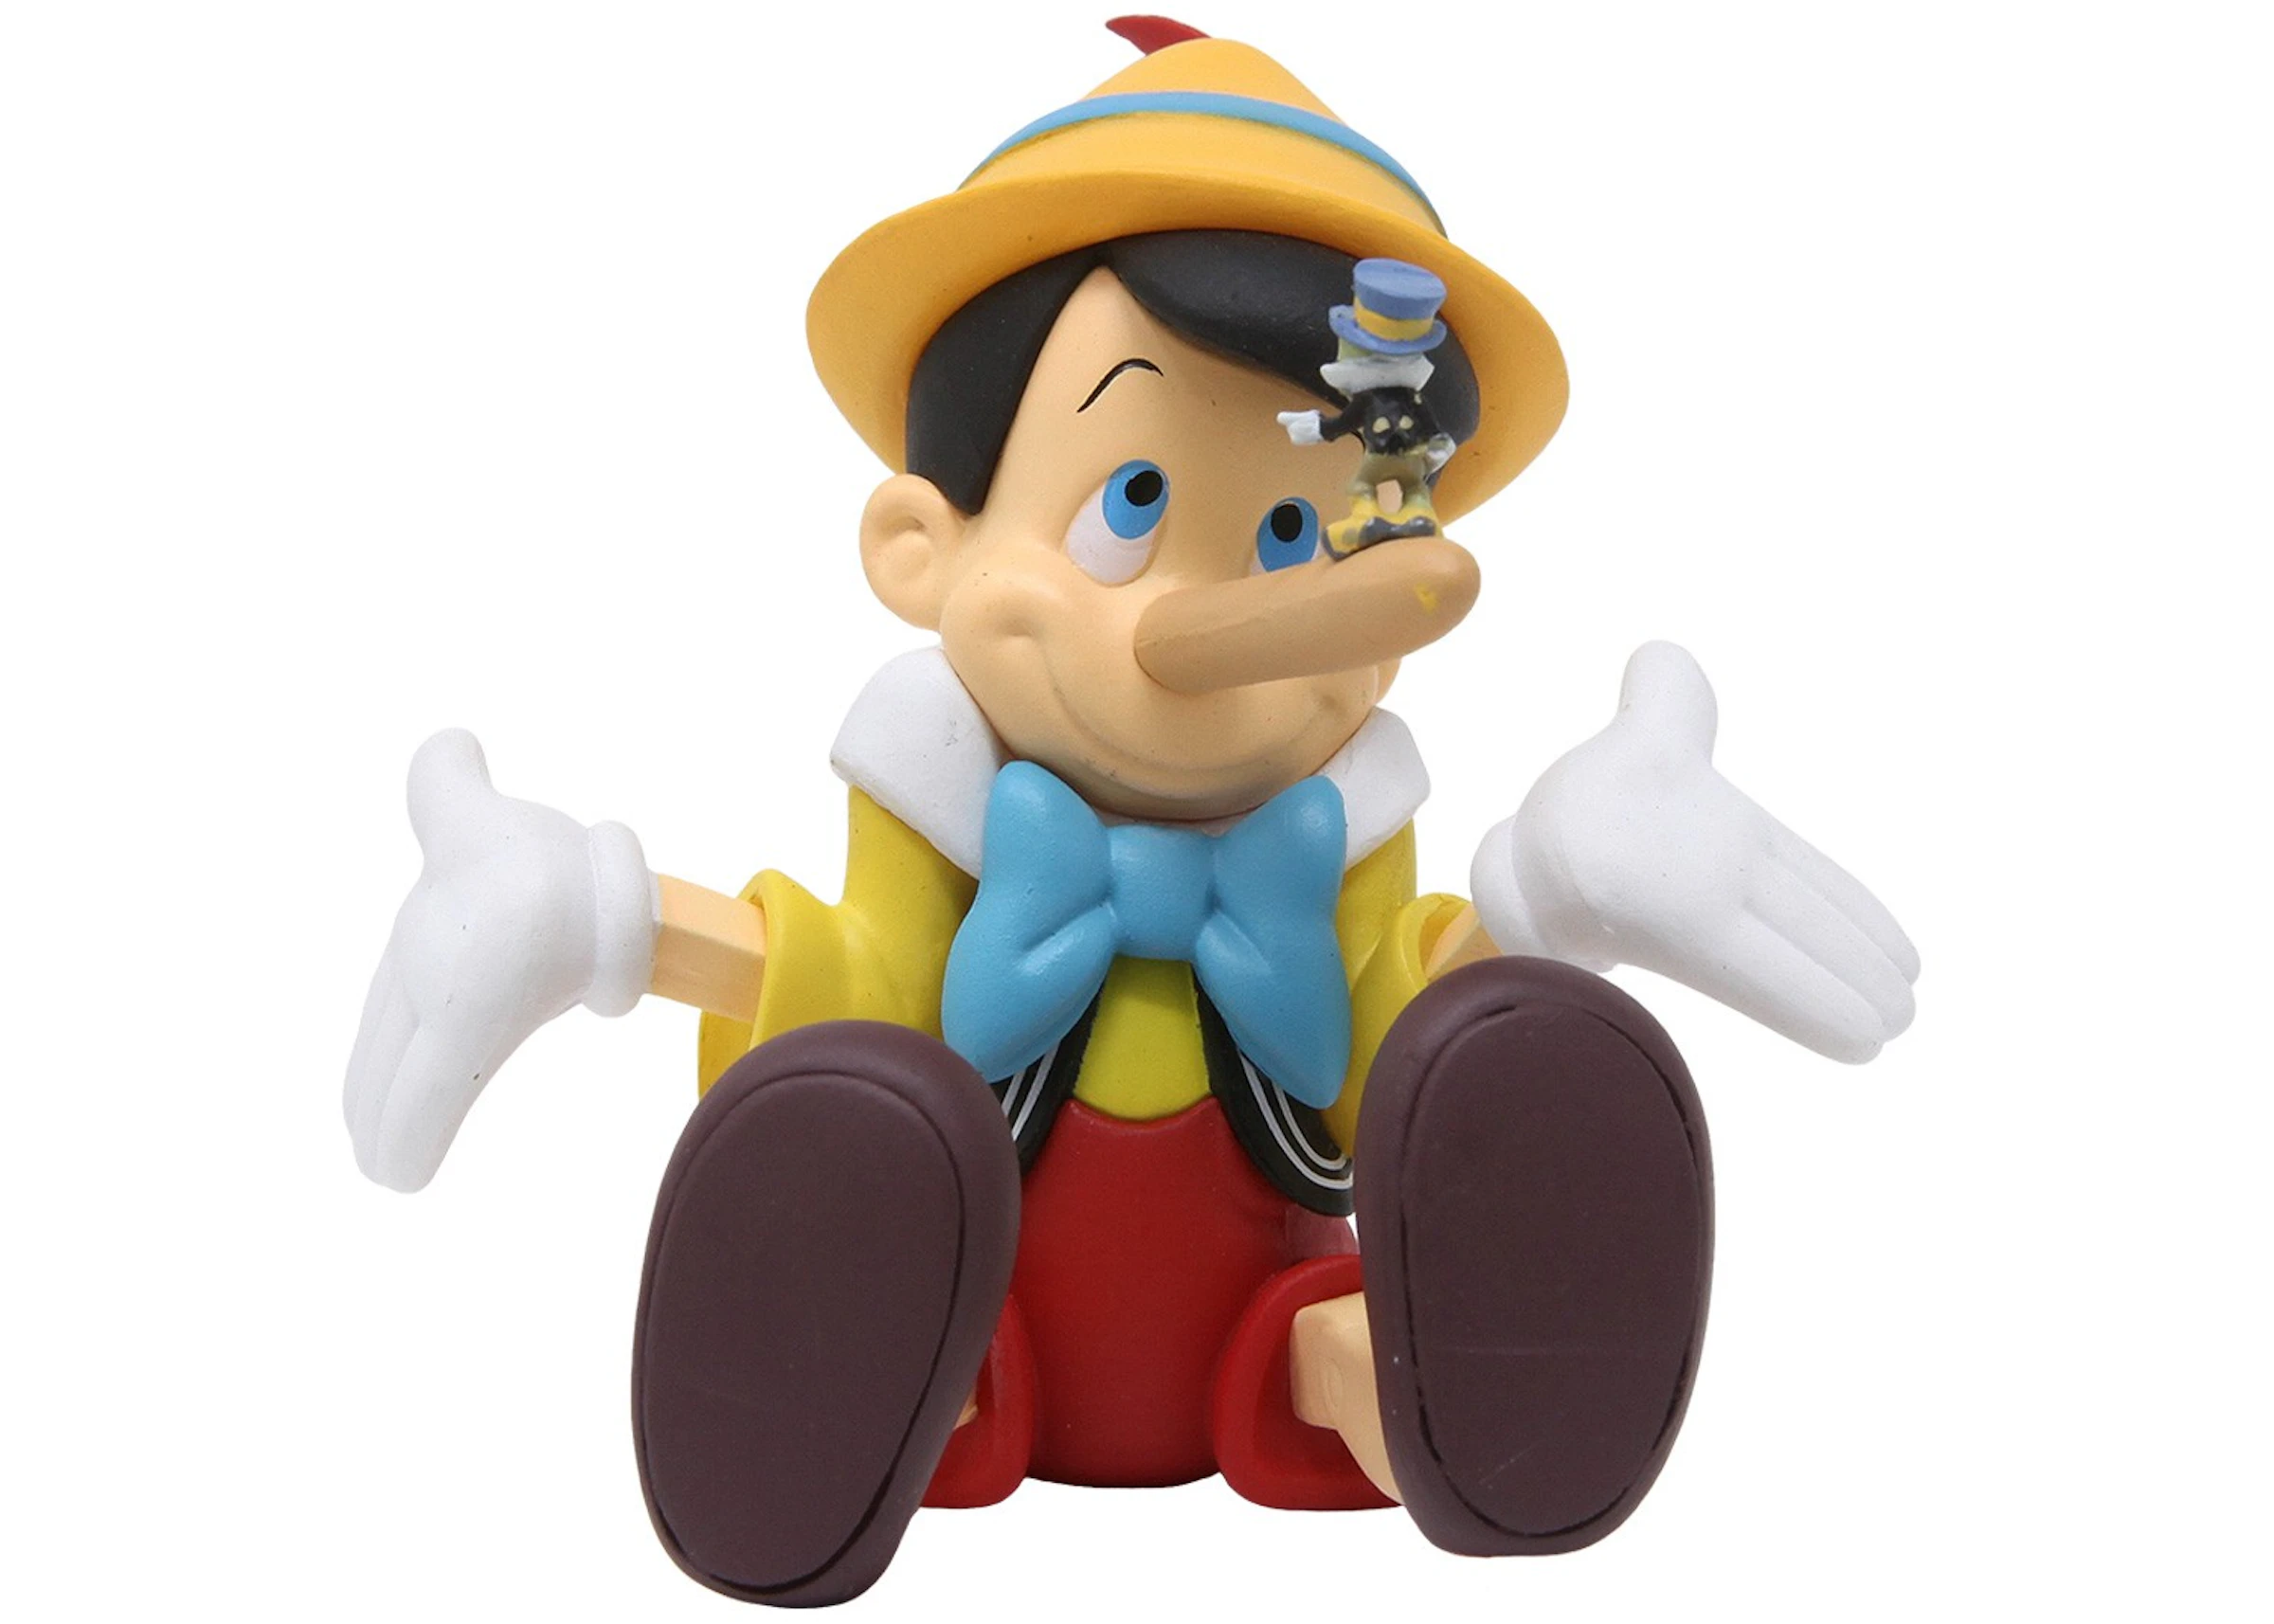 Medicom UDF Disney Series Pinocchio - Pinocchio Long Nose Ver. Ultra Detail  Figure - US